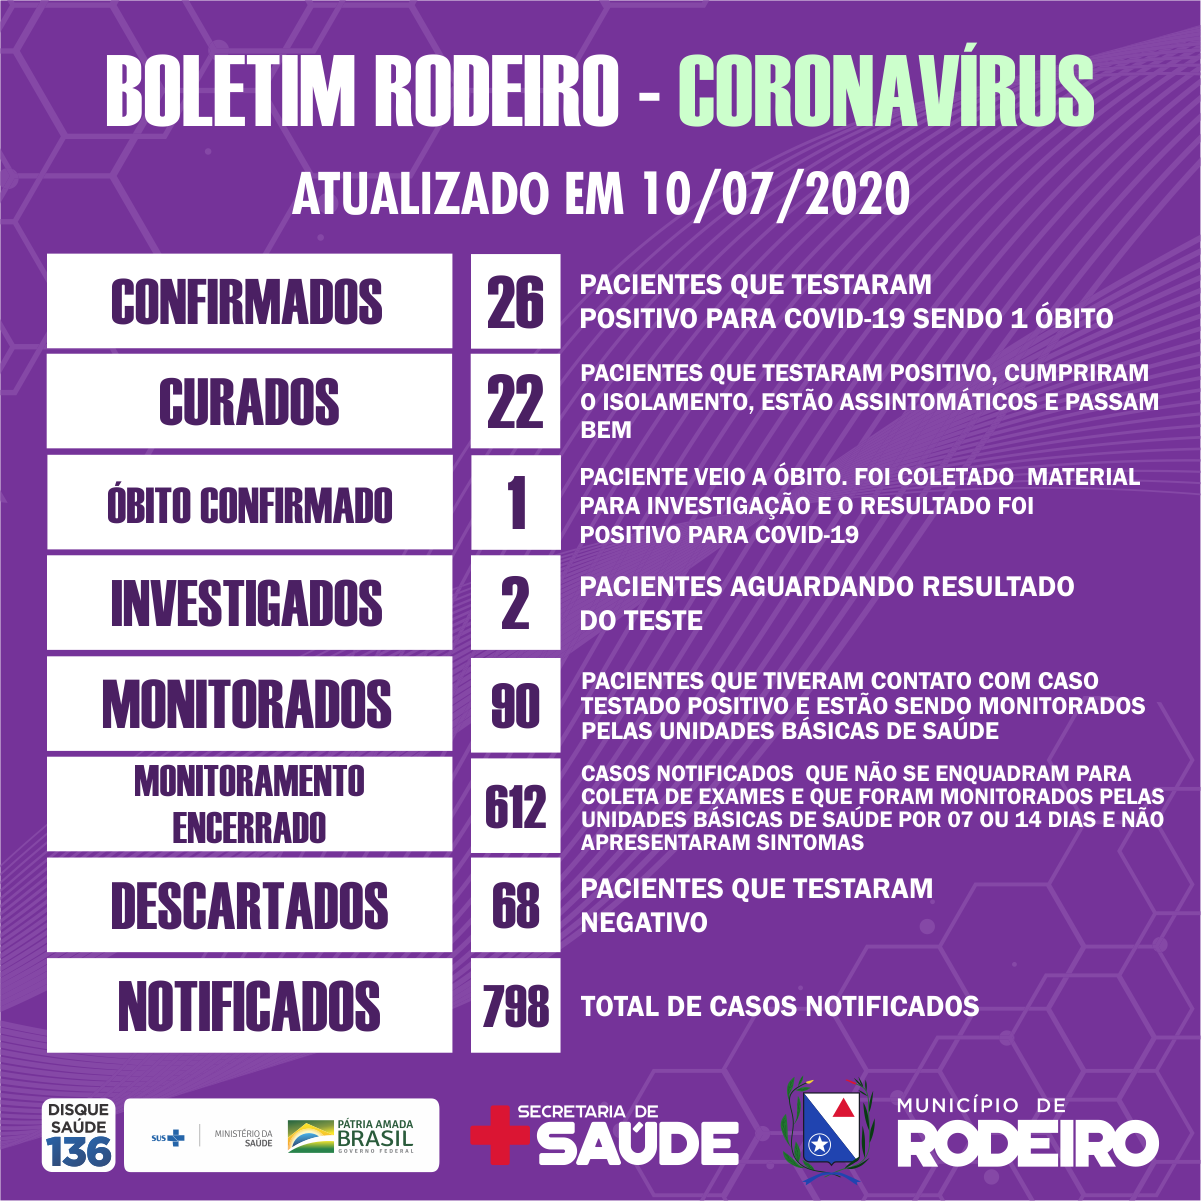 Boletim epidemiológico do Município de Rodeiro coronavírus, atualizado em 10/07/2020